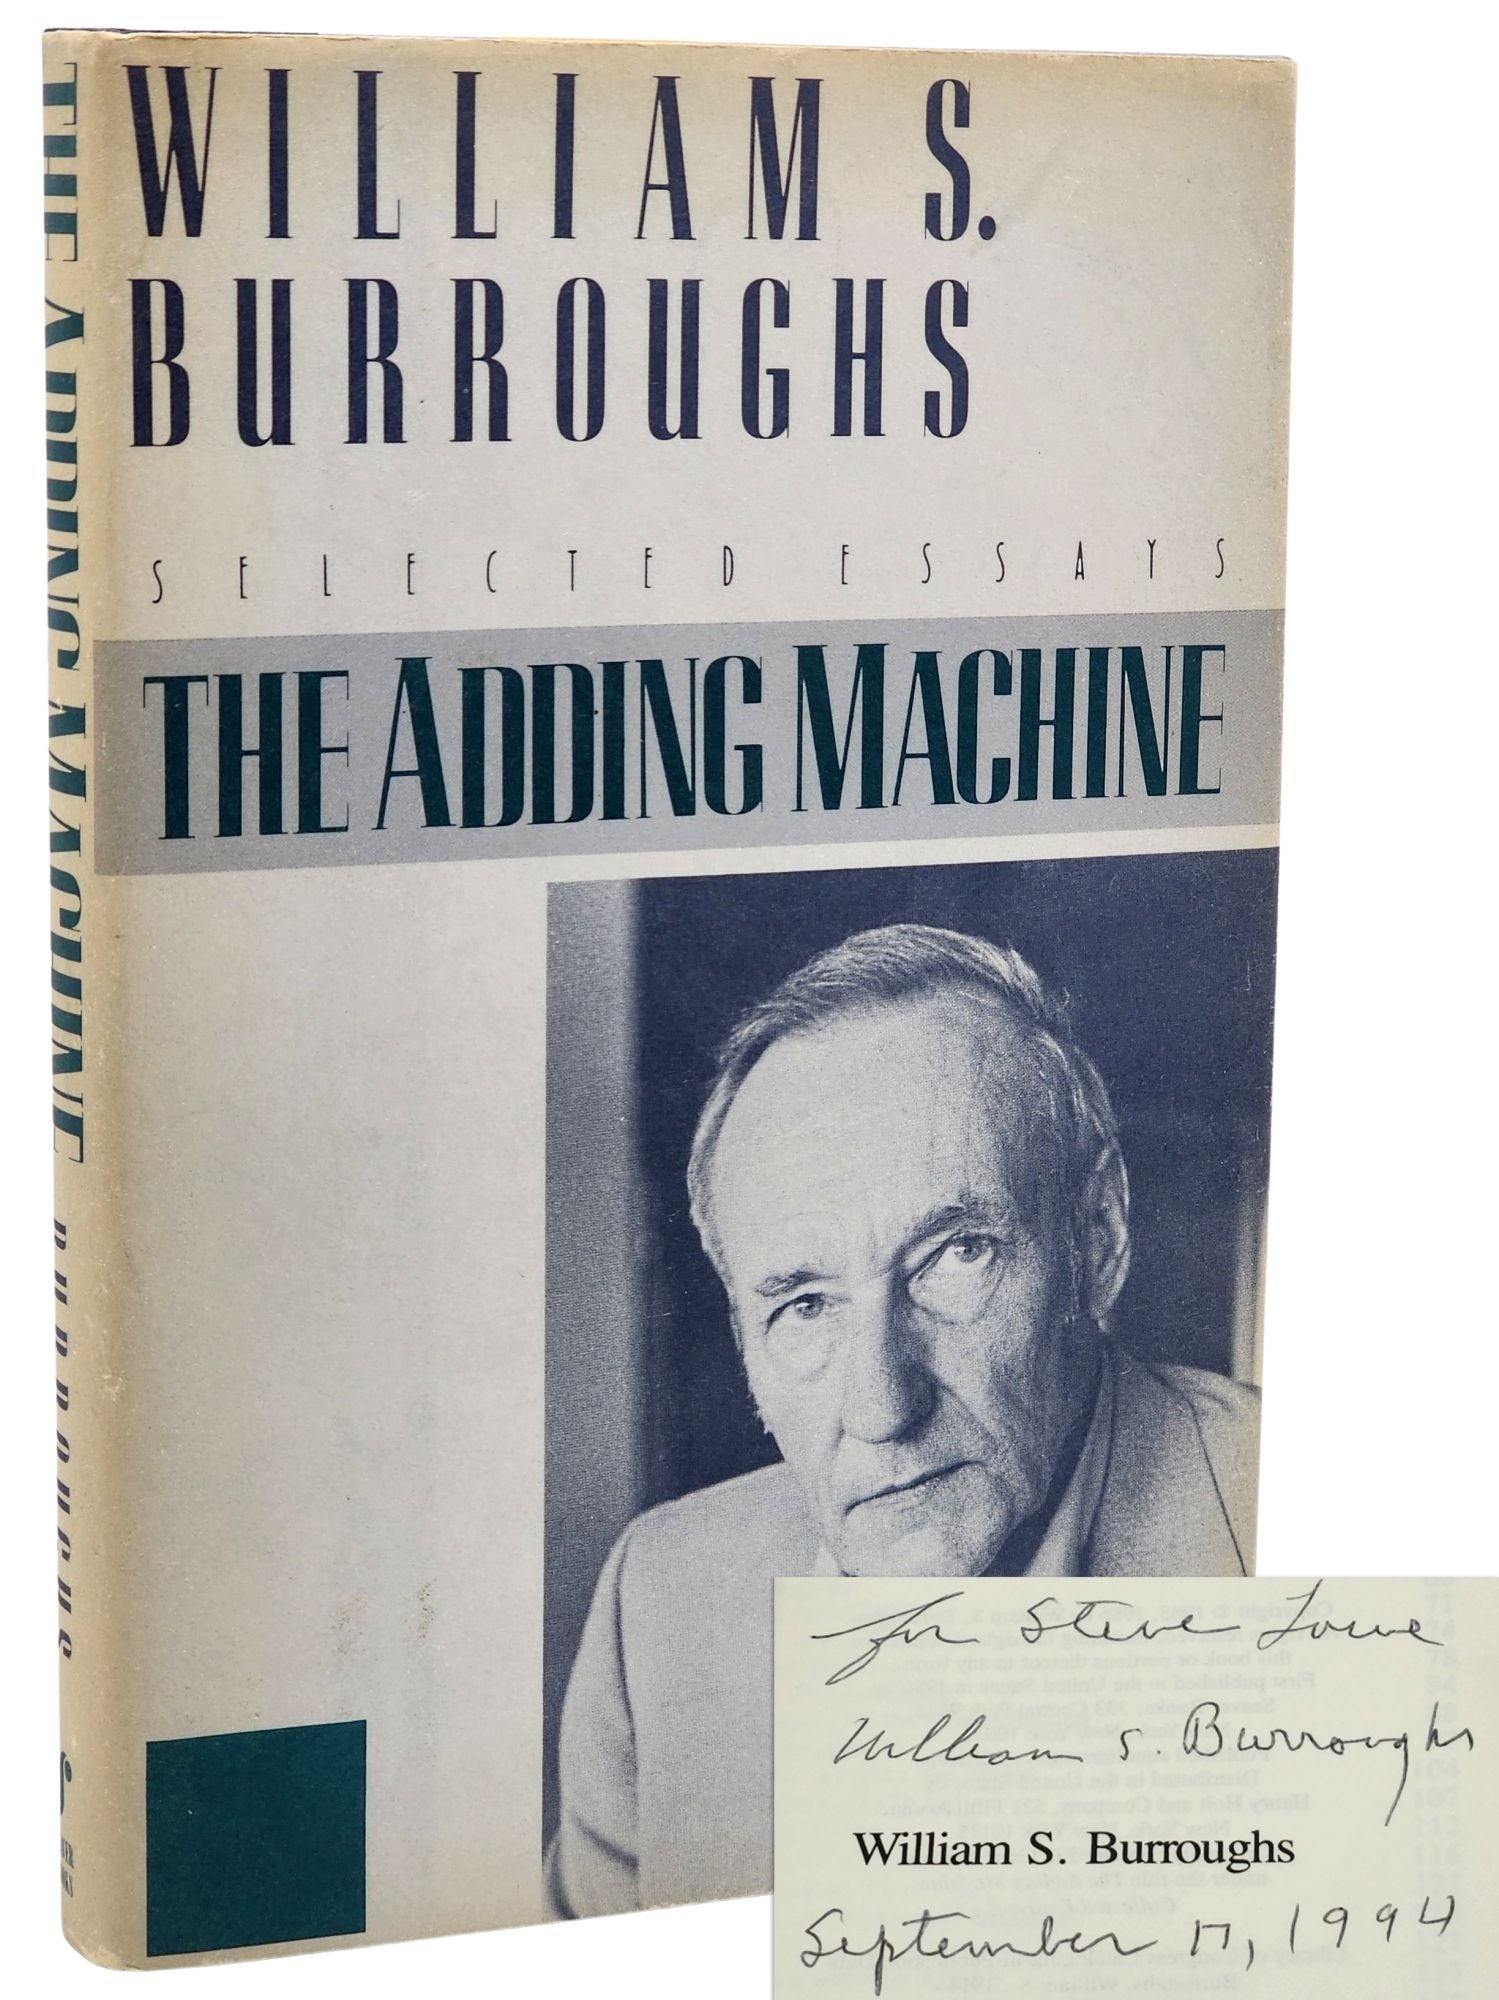 [Book #50821] THE ADDING MACHINE. William S. Burroughs.